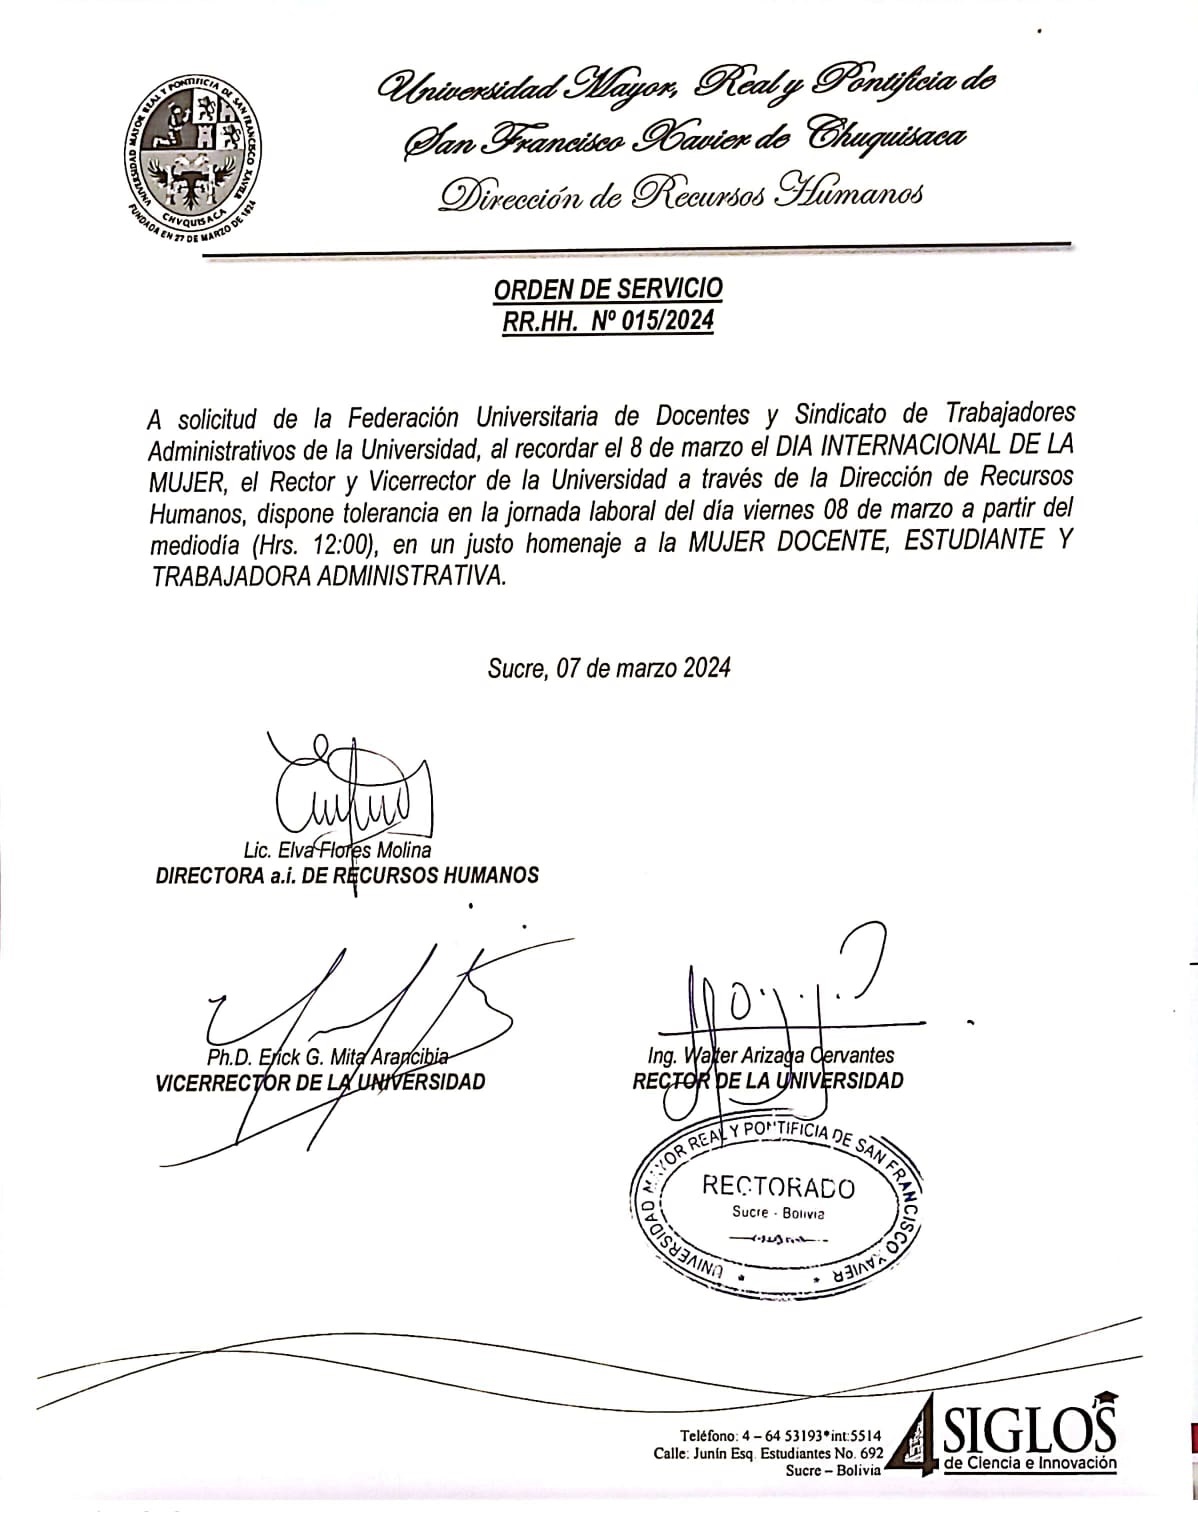 ORDEN DE SERVICIO RR.HH. Nº 015/2024, TOLERANCIA DÍA INTERNACIONAL DE LA MUJER.